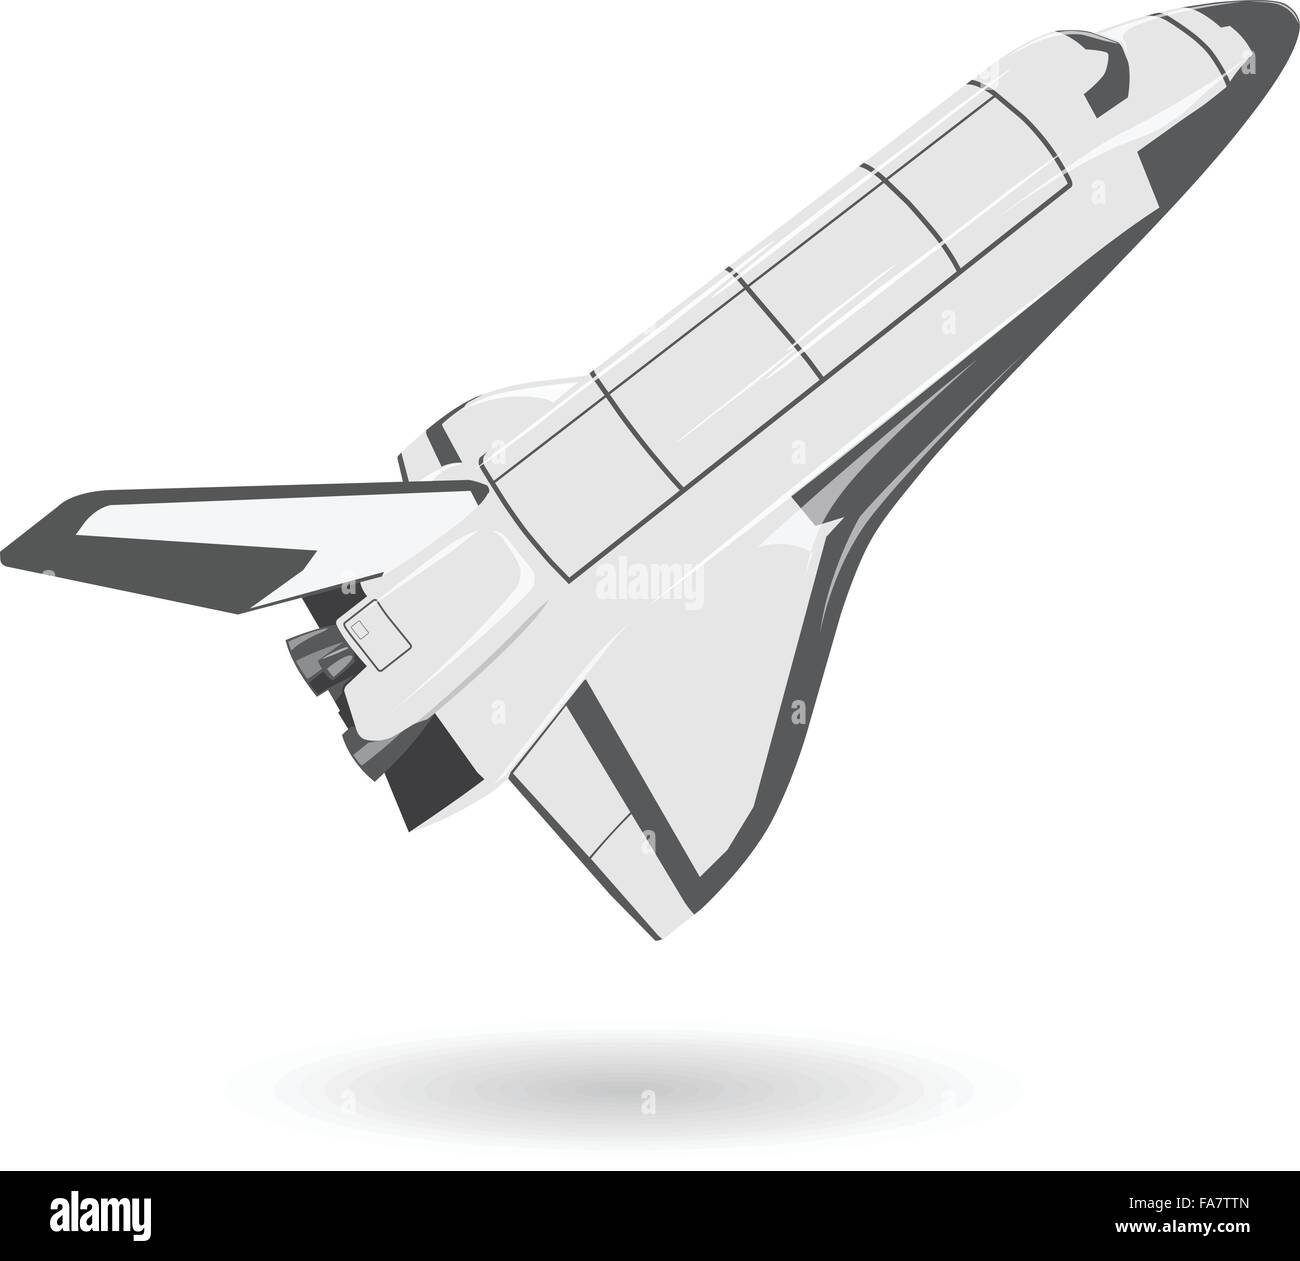 Weiße und schwarze schöne Raumfähre auf weiß - schöne flighting Raumschiff Kraftstofftank - glätten isolierte Abbildung Meister Vektor Stock Vektor